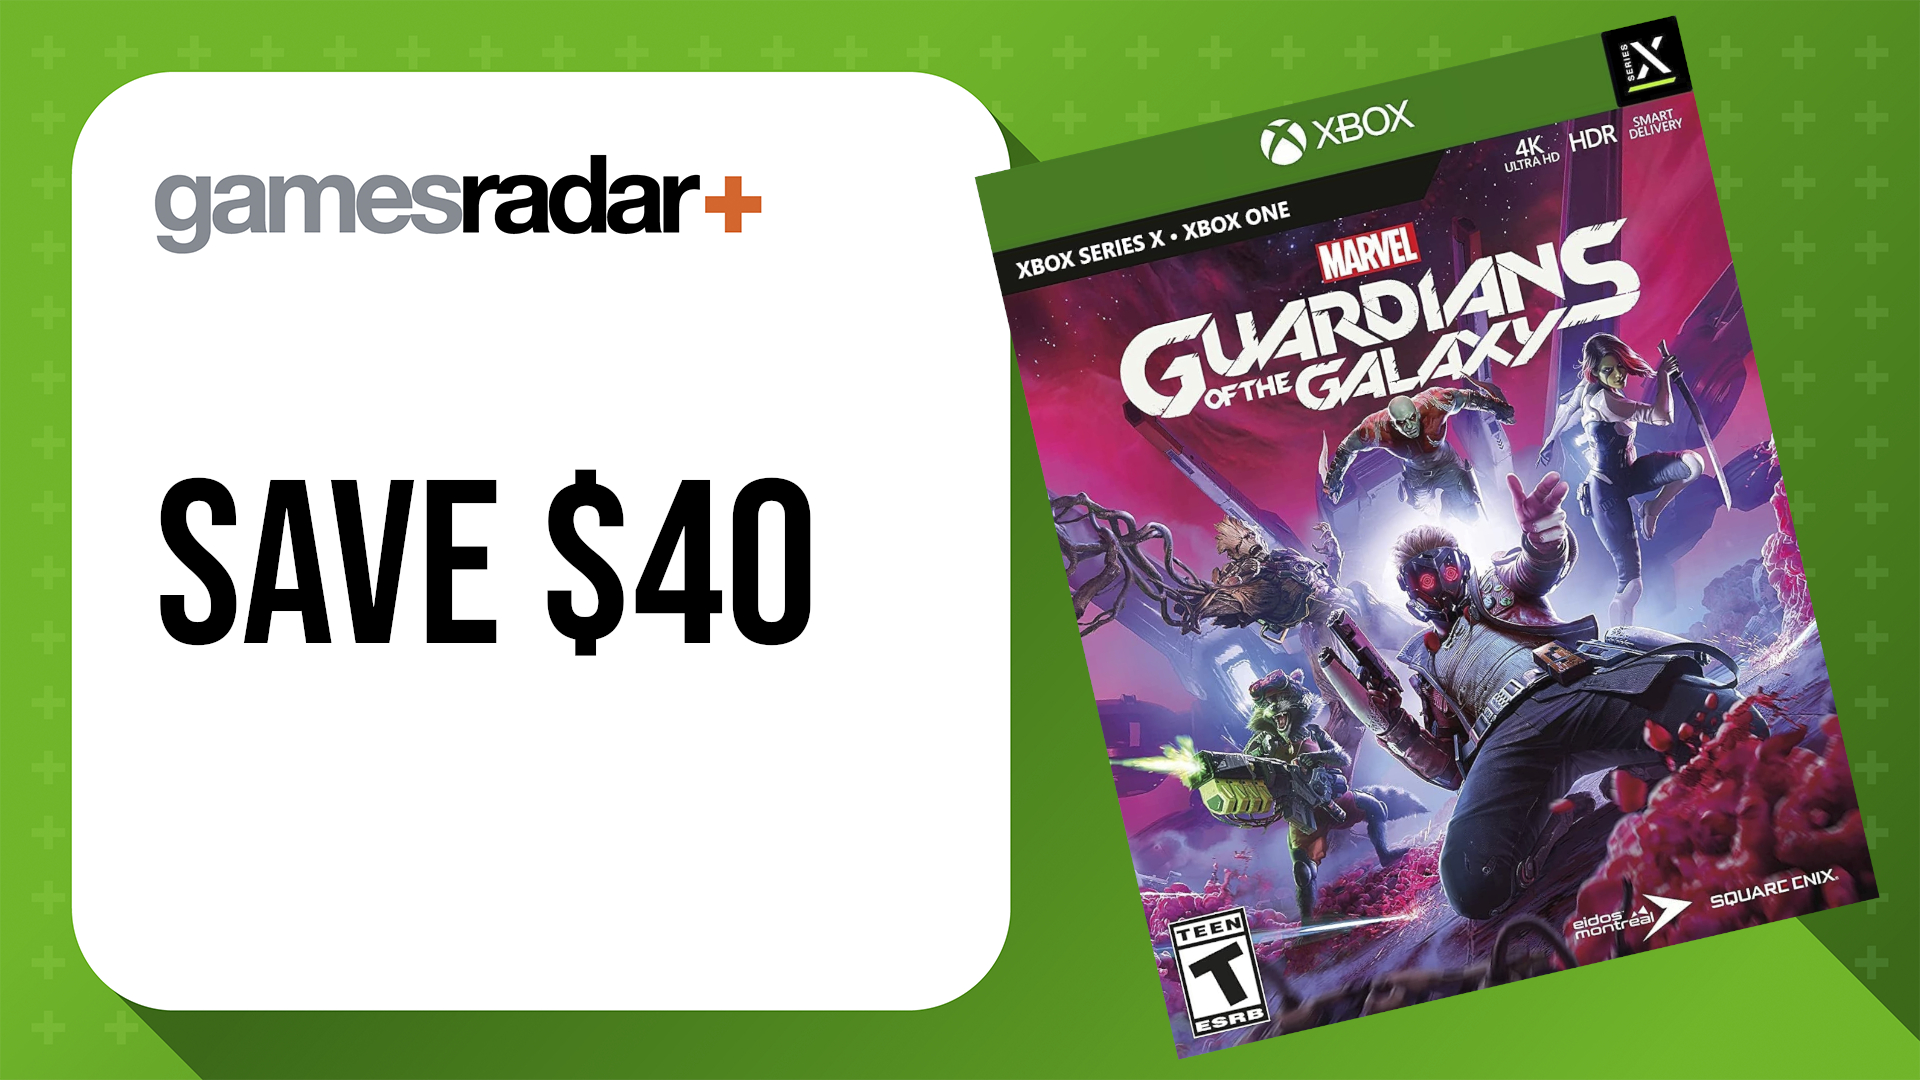 ยอดขาย Xbox Prime Day ของ Amazon พร้อมกล่องเกม Guardians of the Galaxy